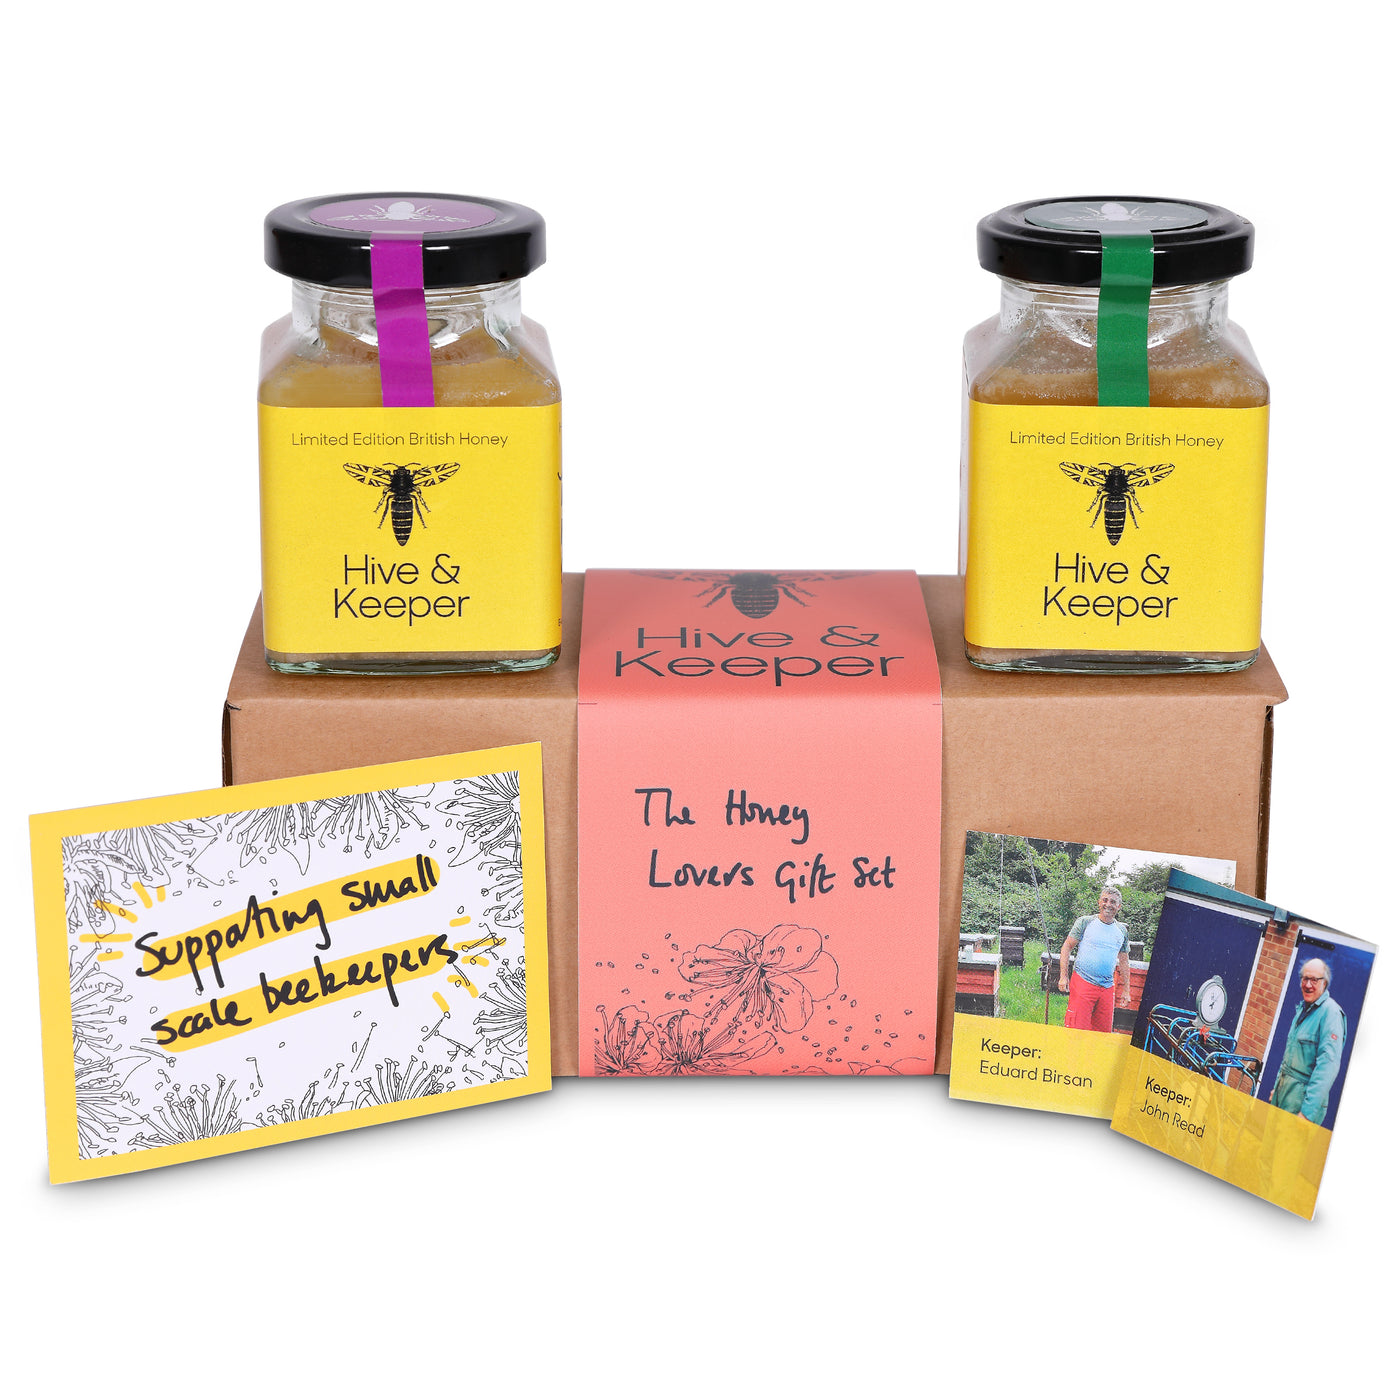 The British Honey Lovers Gift Set